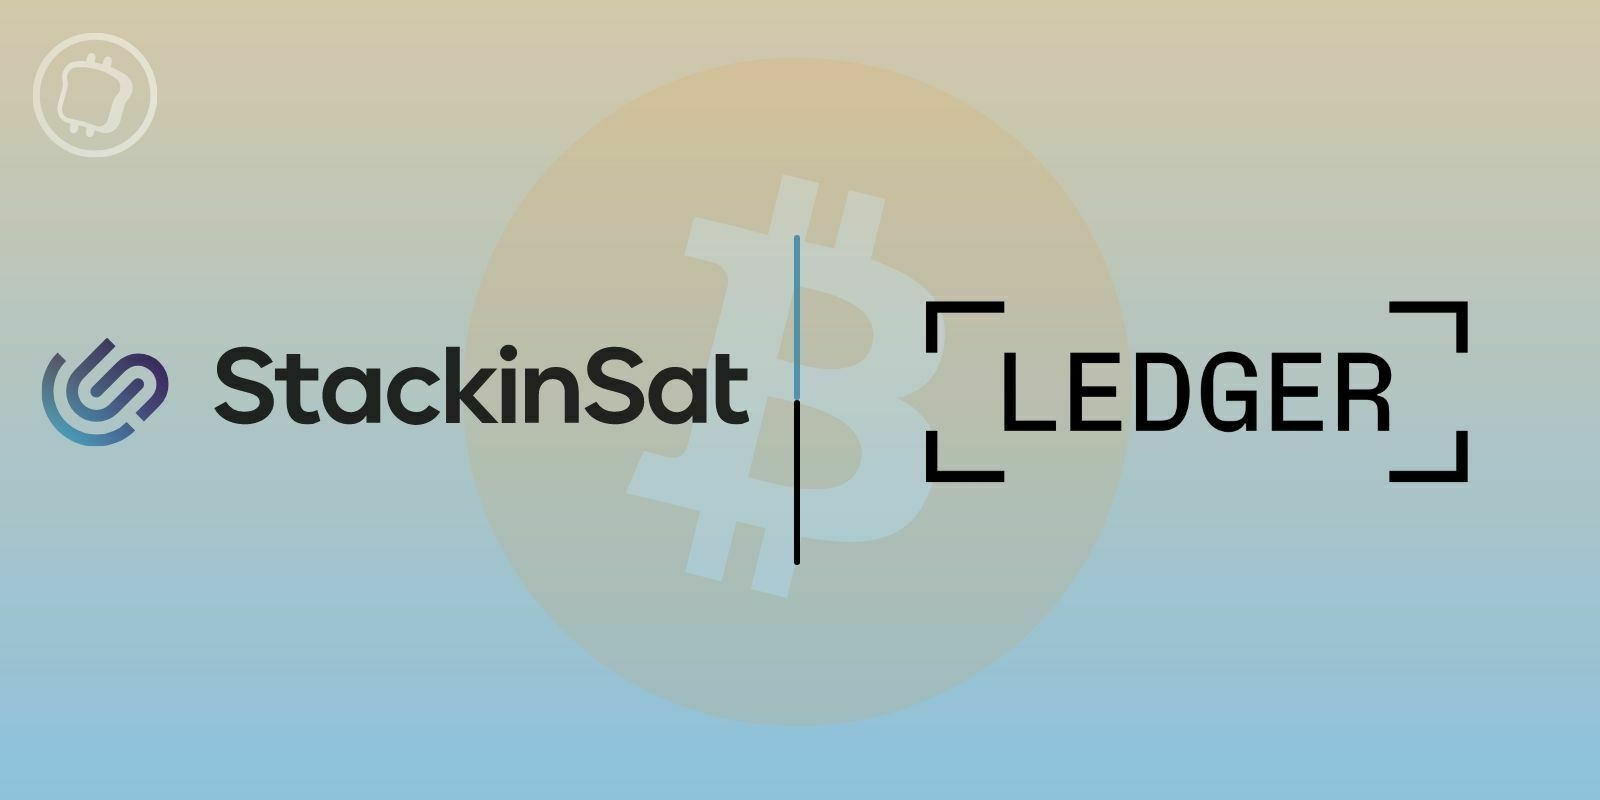 L’épargne Bitcoin (BTC) de StakinSat est désormais disponible depuis Ledger Live